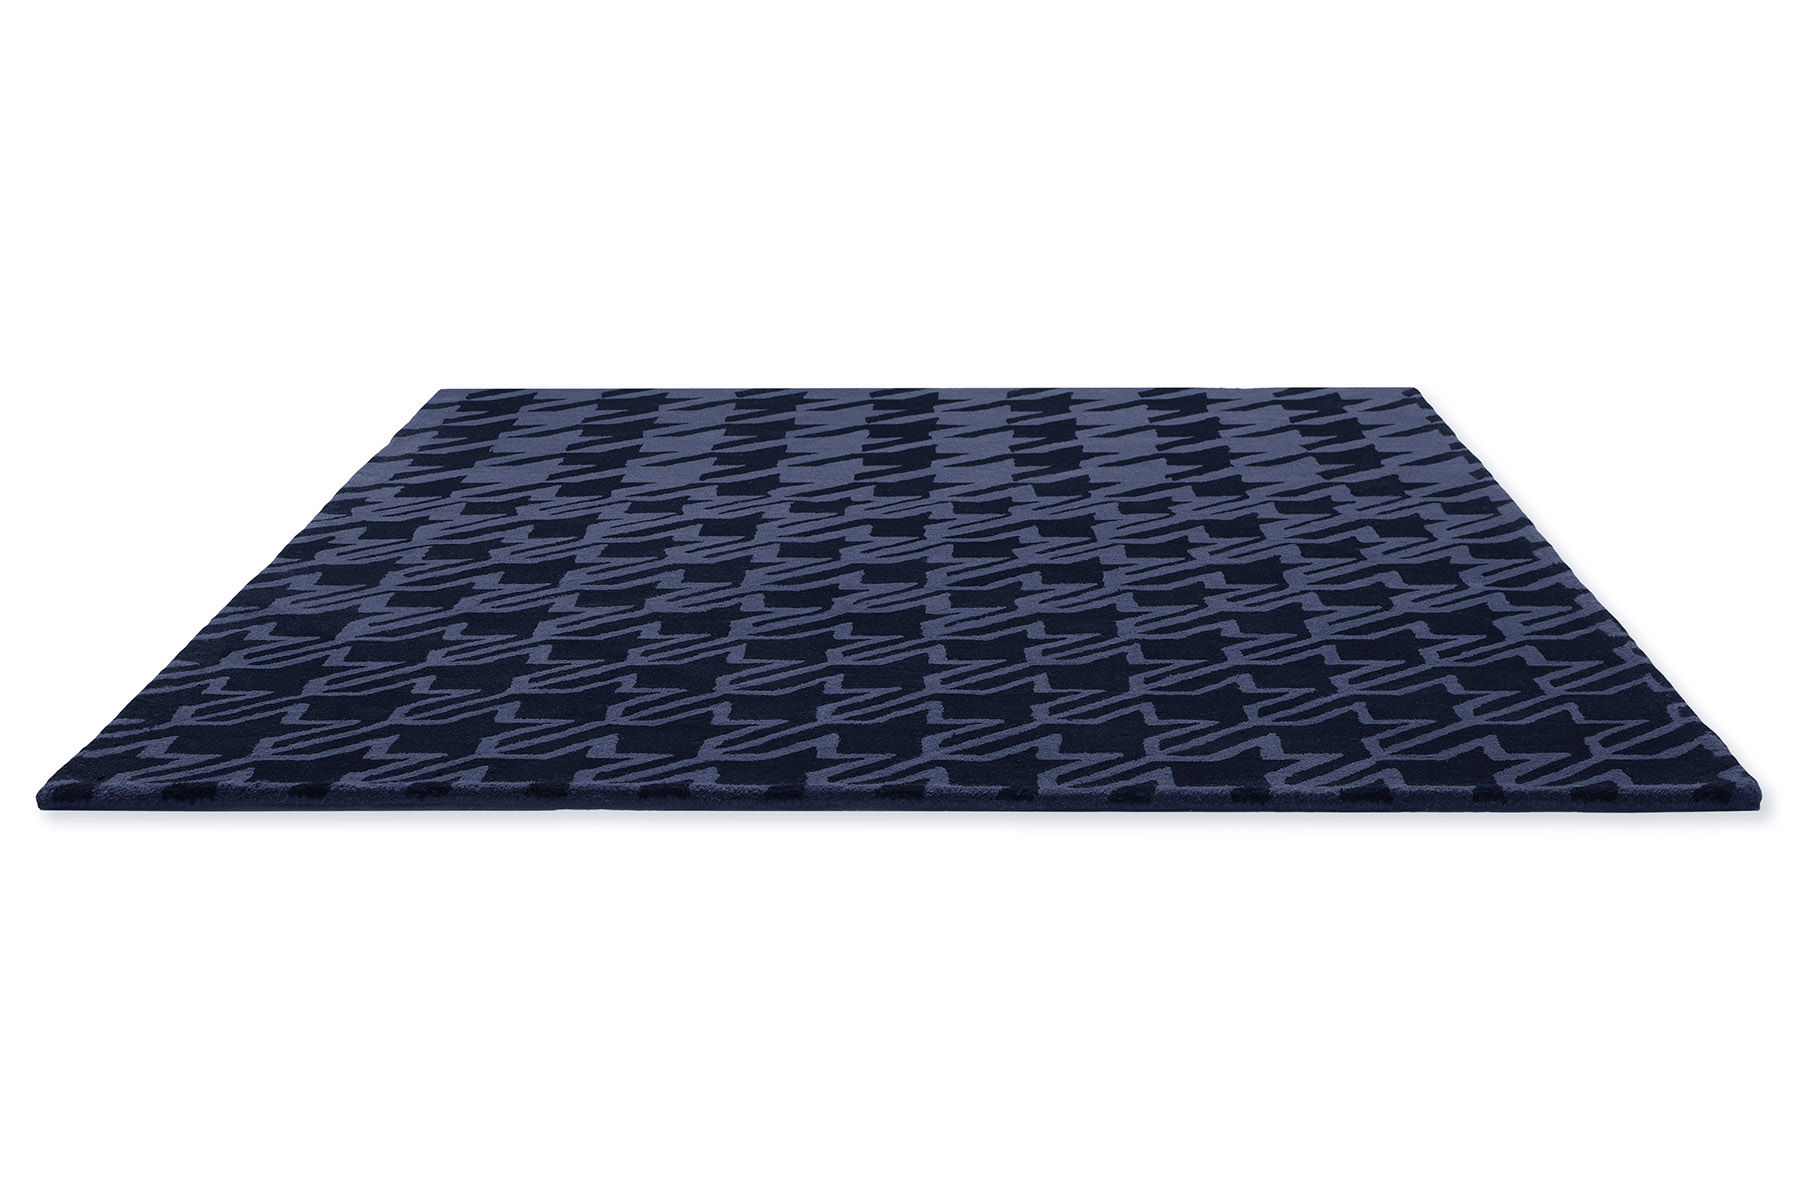 Houndstooth Dark Blue Designer Rug ☞ Size: 4' 7" x 6' 7" (140 x 200 cm)